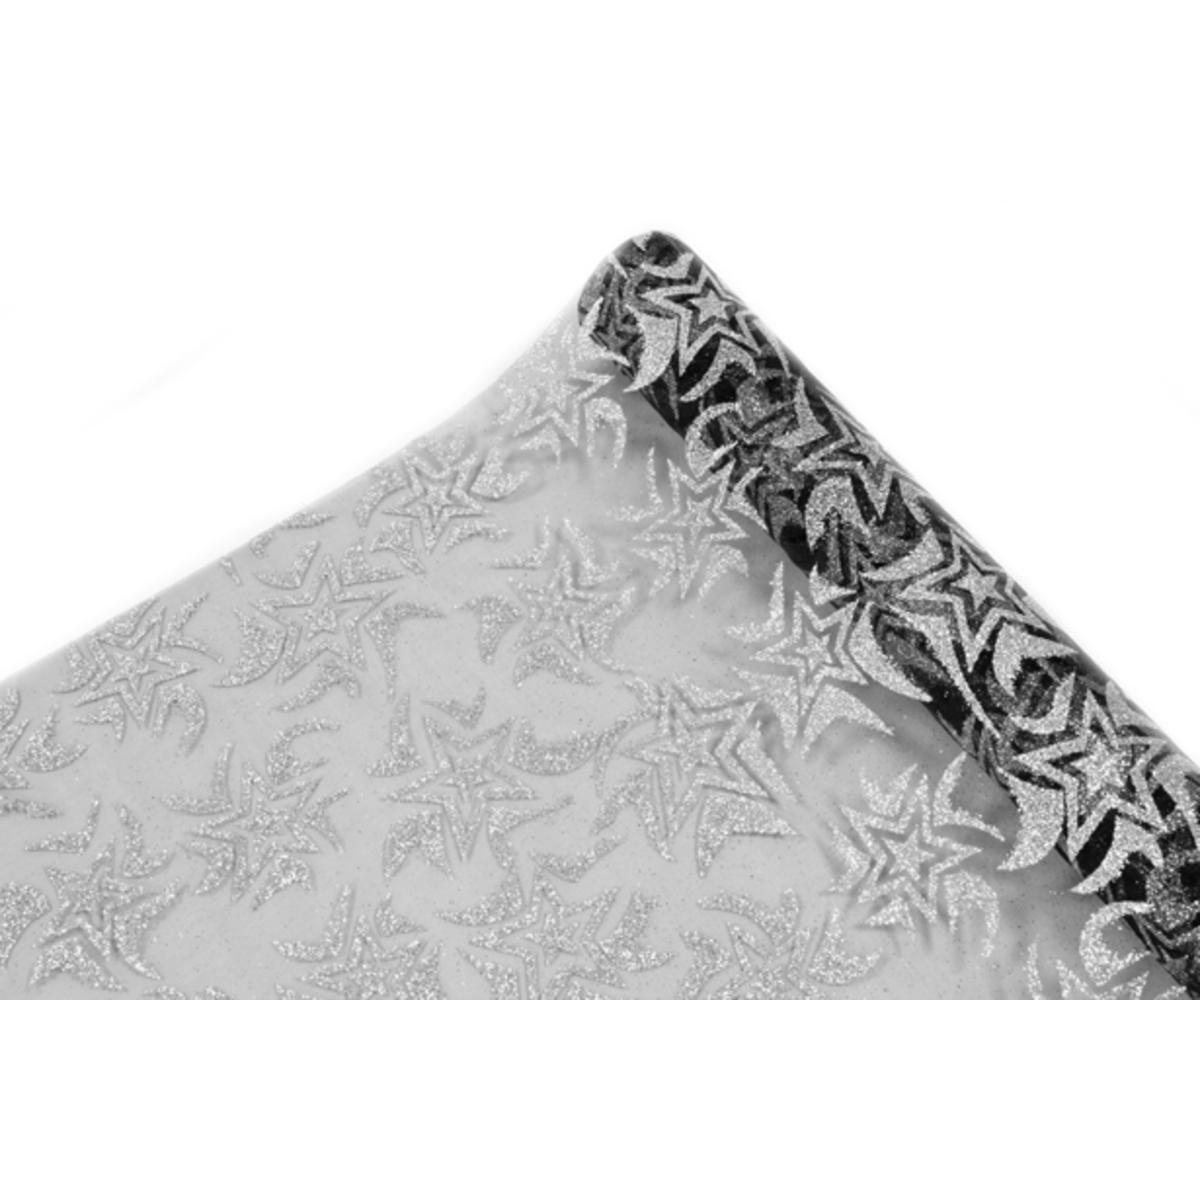 Rouleau pailleté étoiles - 28 cm x 5 m - Noir et argent